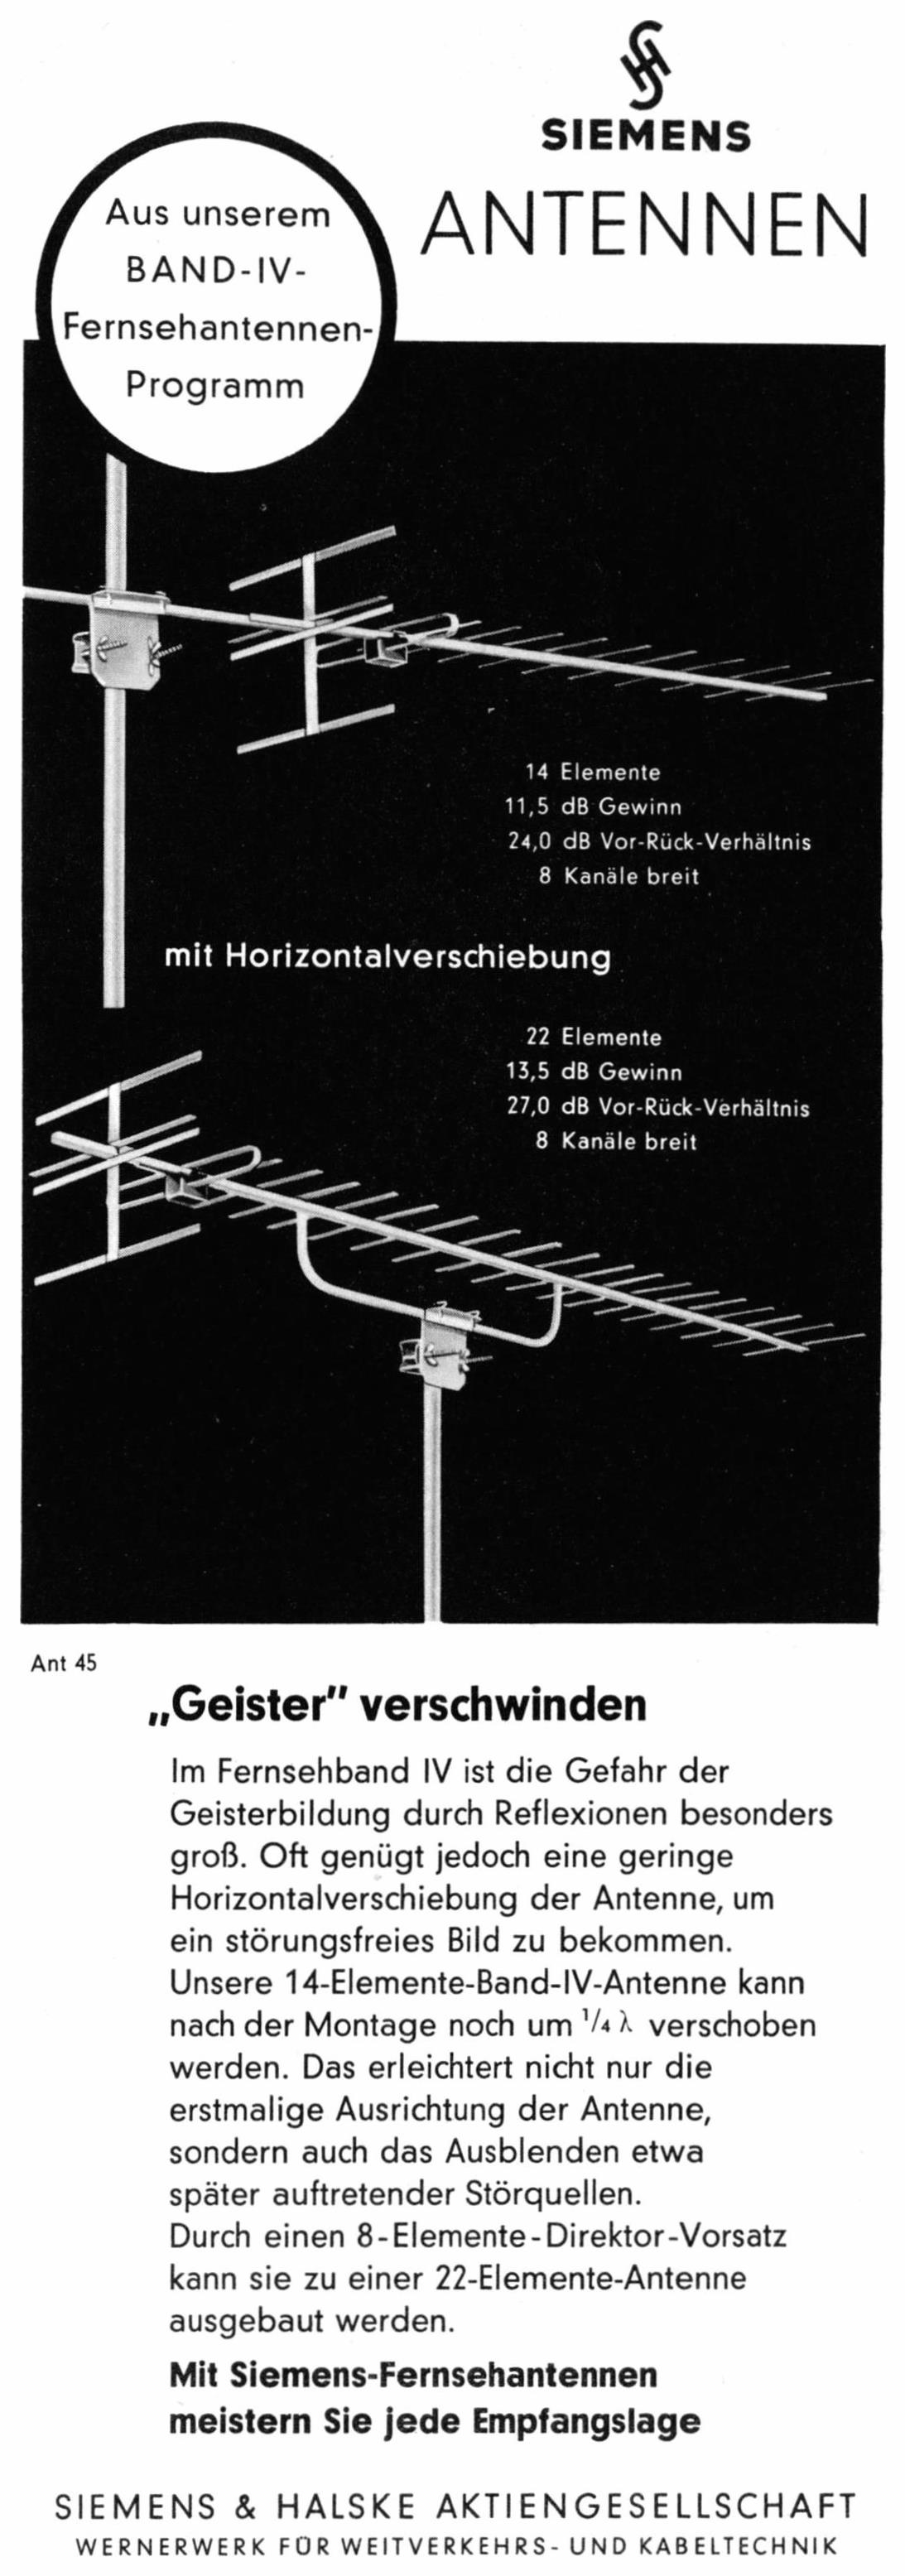 Siemens 1961 11.jpg